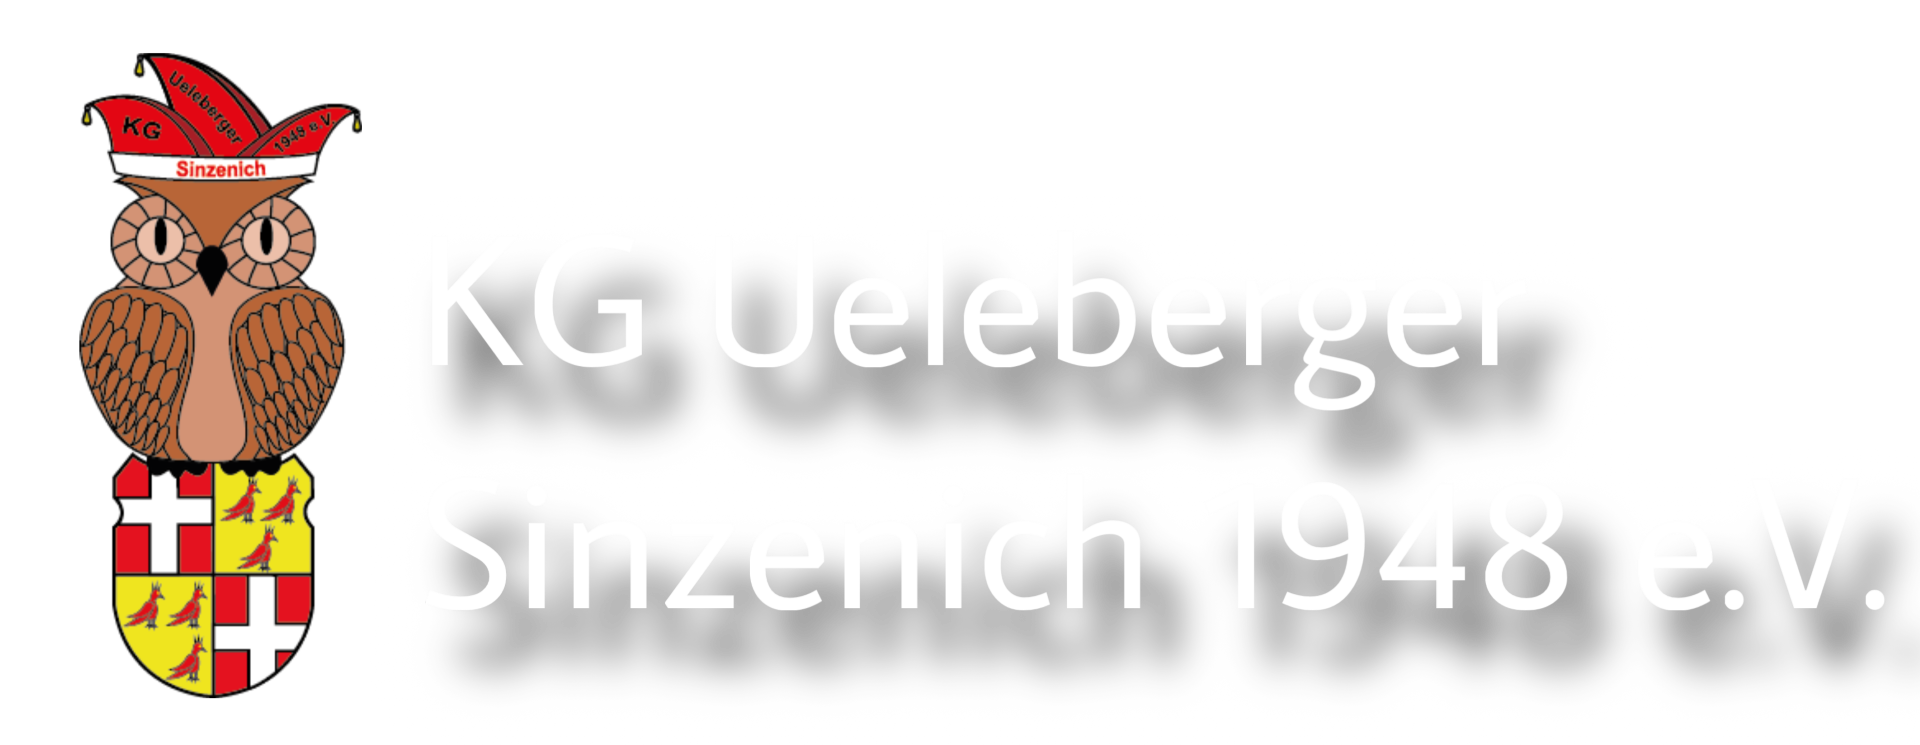 KG Ueleberger Sinzenich 1948 e.V.